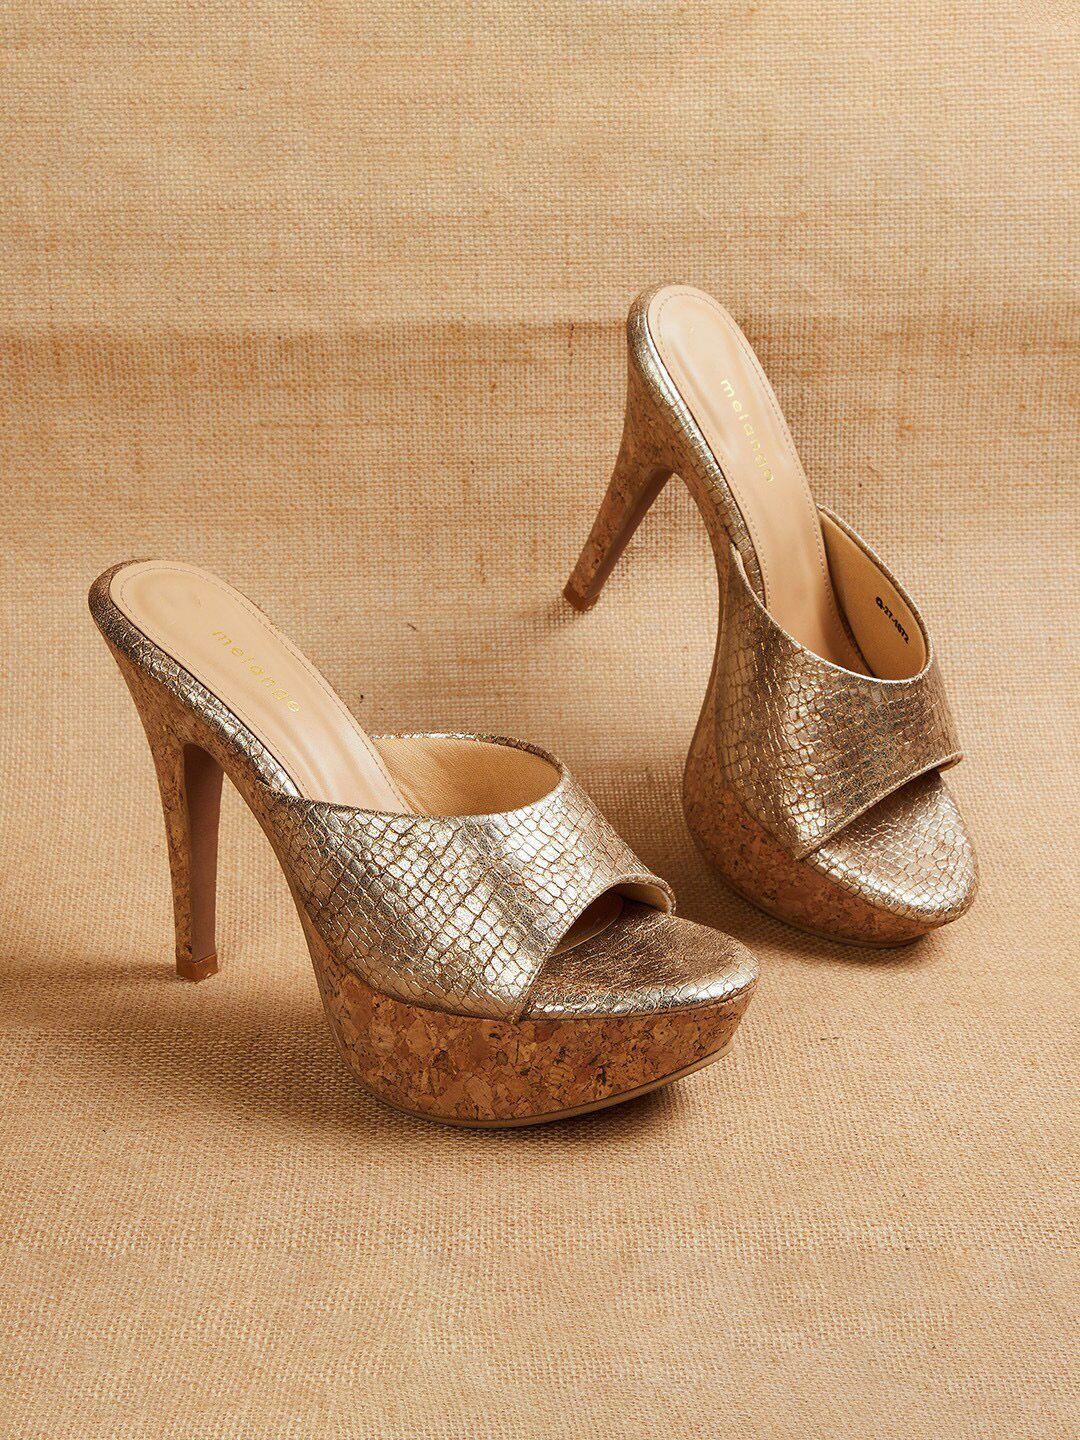 melange-by-lifestyle-textured-stiletto-heels